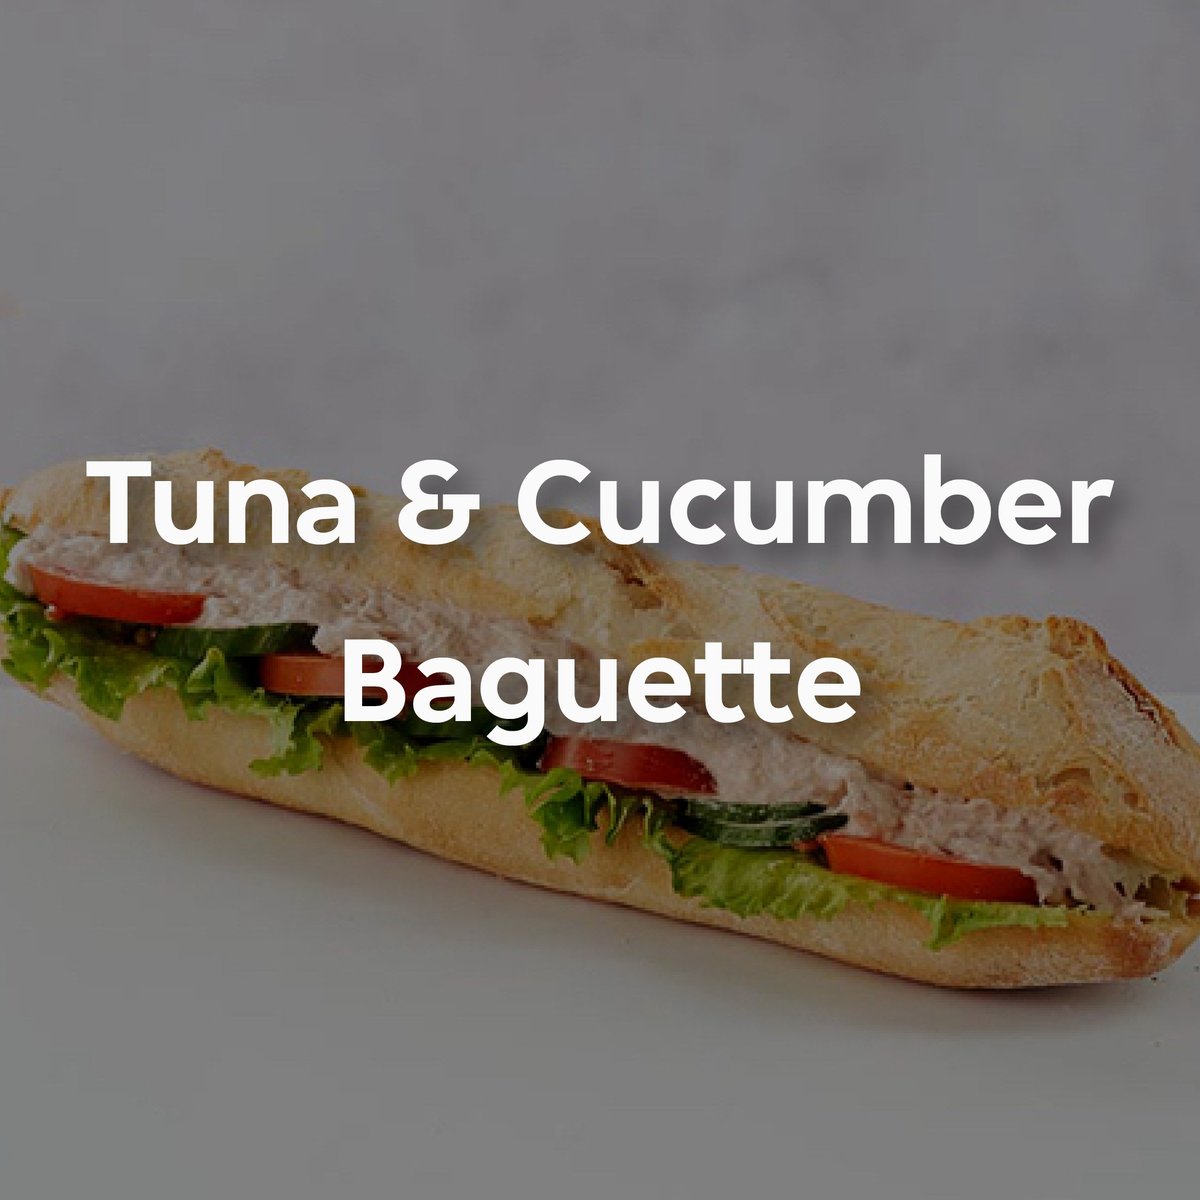 tuna and cuc baguette paul 